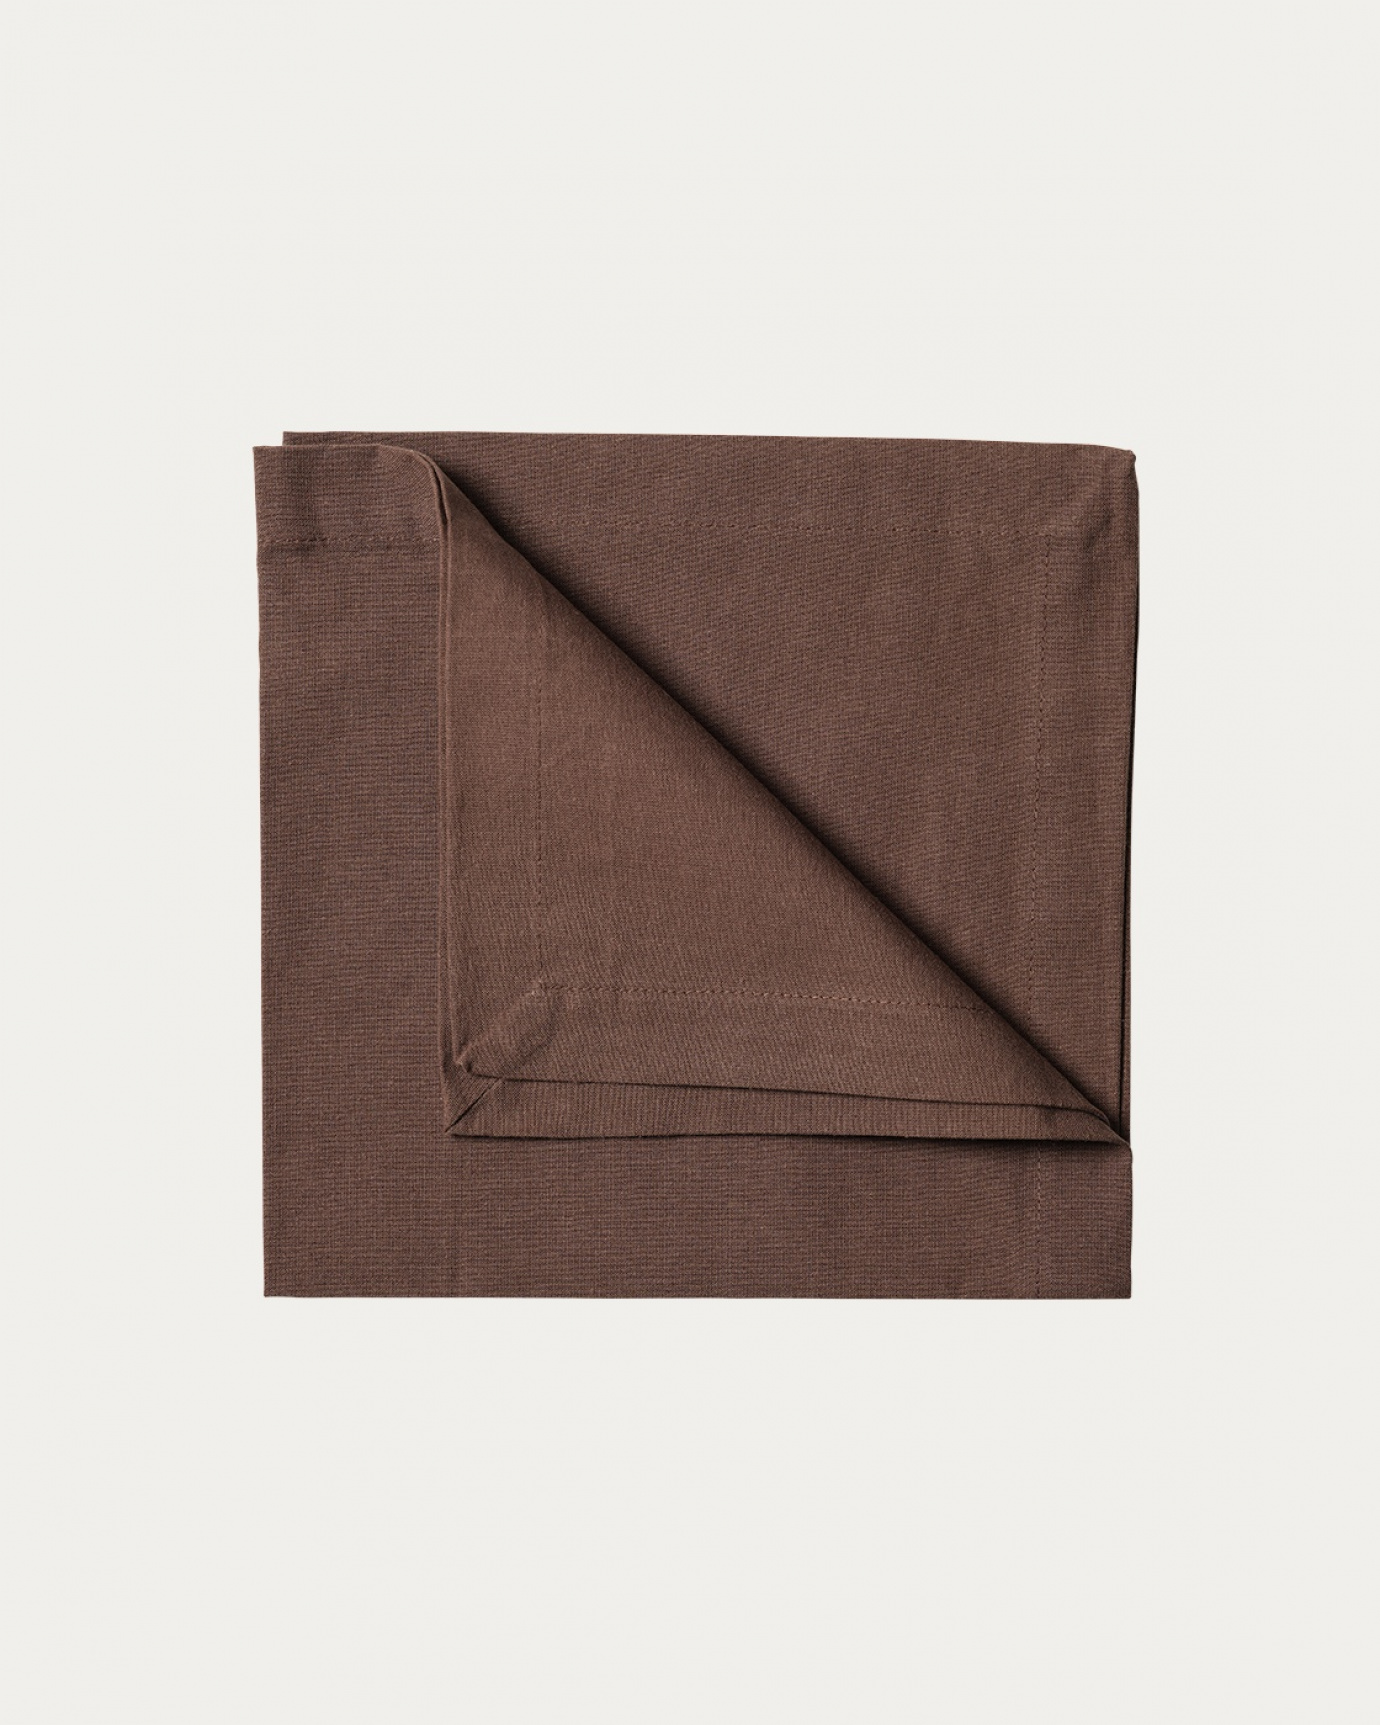 Produktbild björnbrun ROBERT servett av mjuk bomull från LINUM DESIGN. Storlek 45x45 cm och säljs i 4 pack.